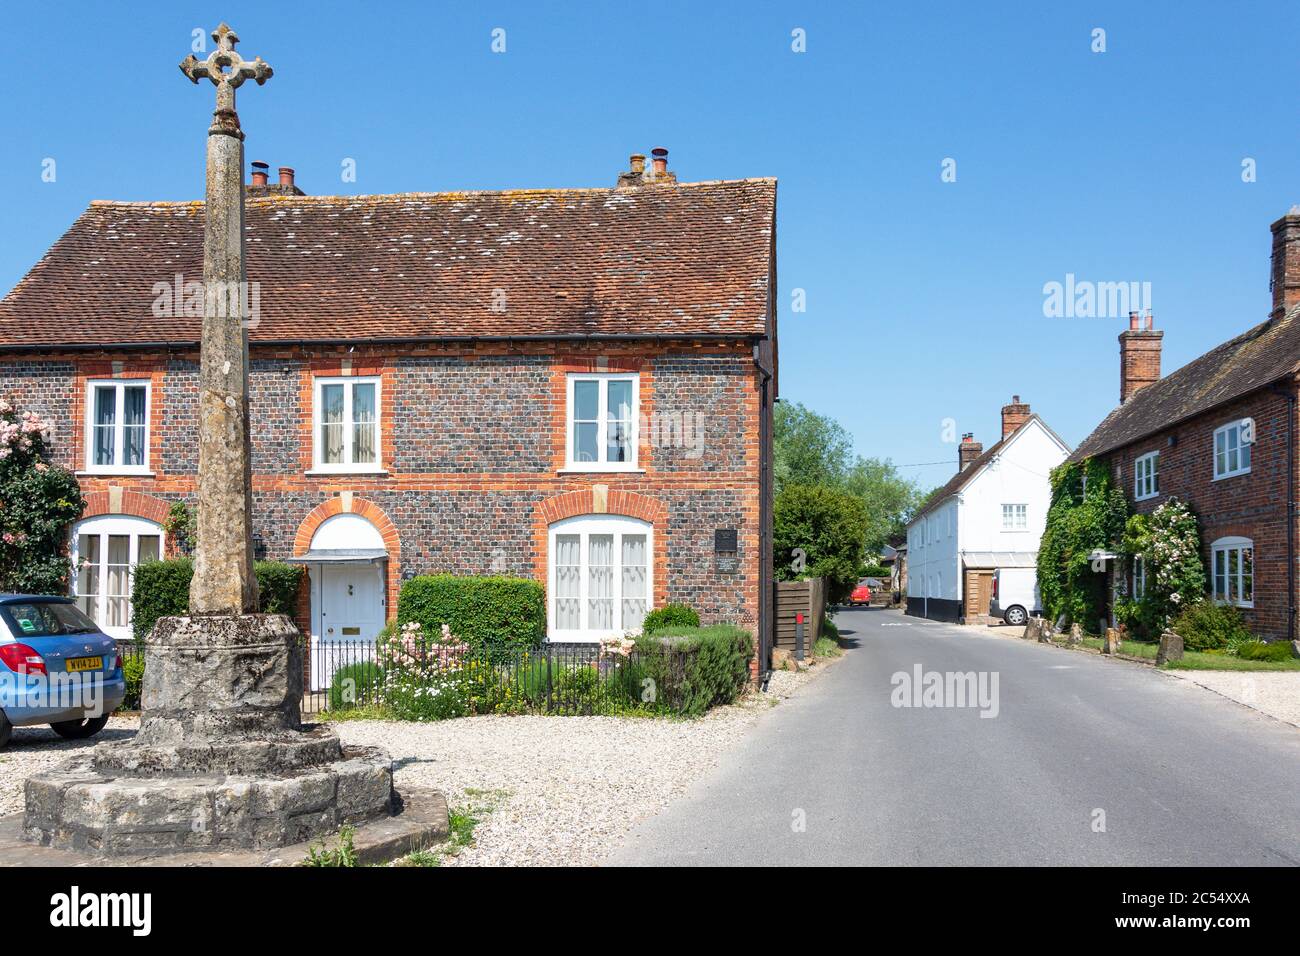 Croix de St Antolin du XVe siècle au centre du village, Newbury Road, Eastbury, Berkshire, Angleterre, Royaume-Uni Banque D'Images